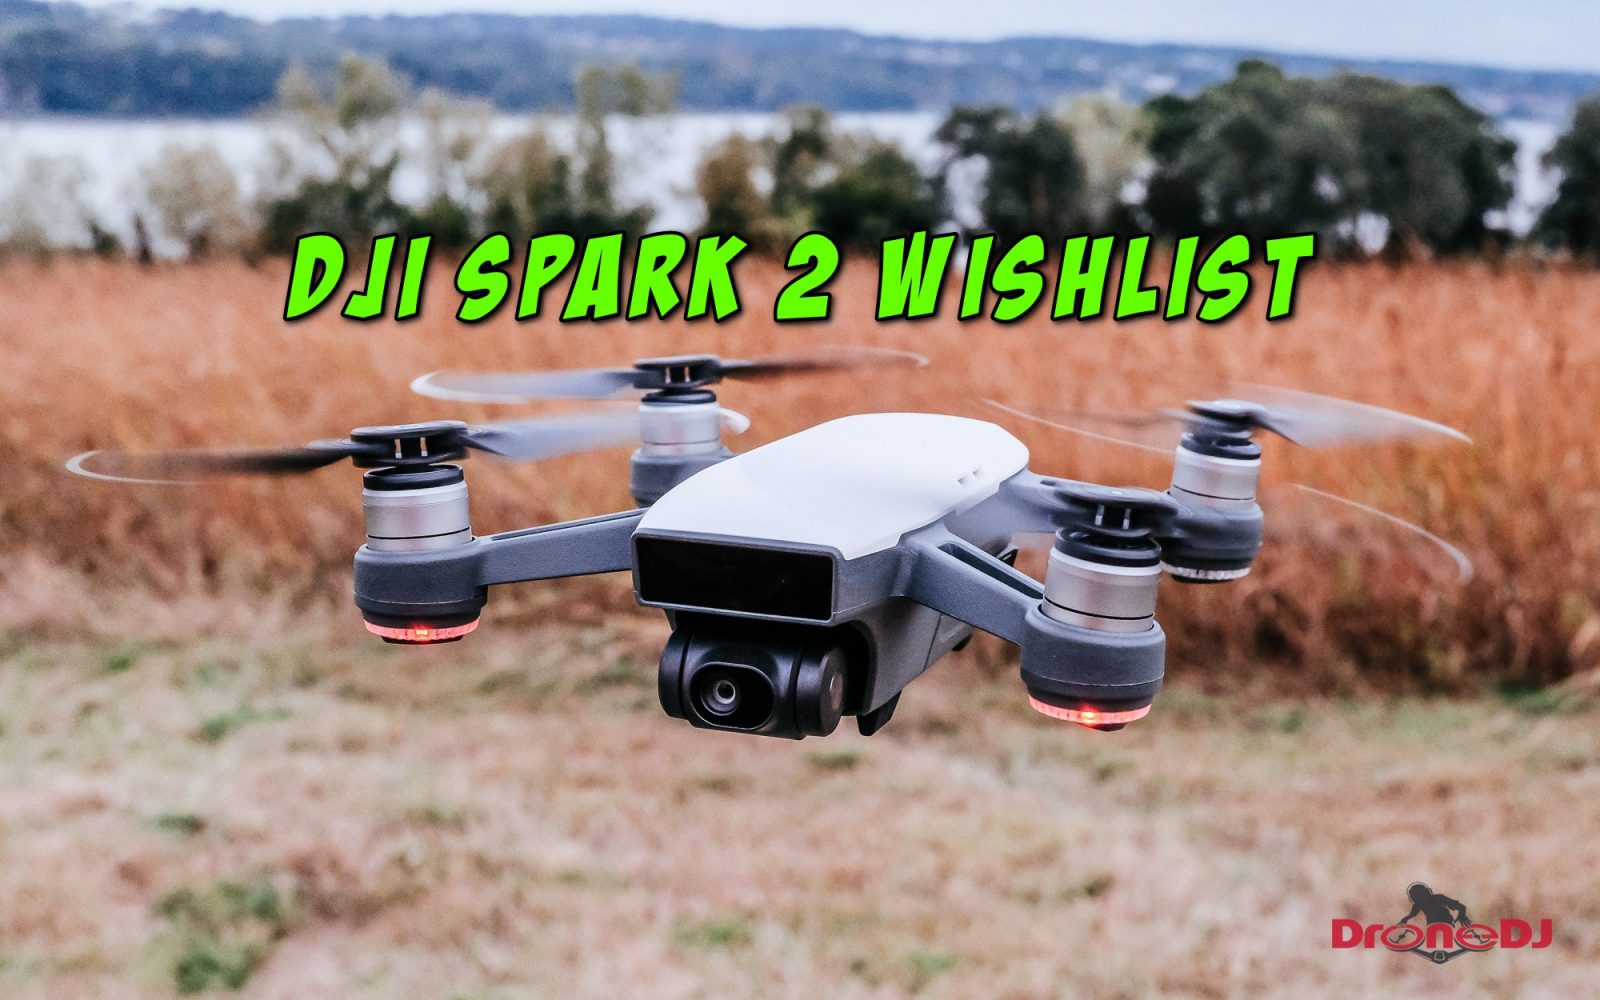 DroneDJ - The DJI Spark 2 wishlist